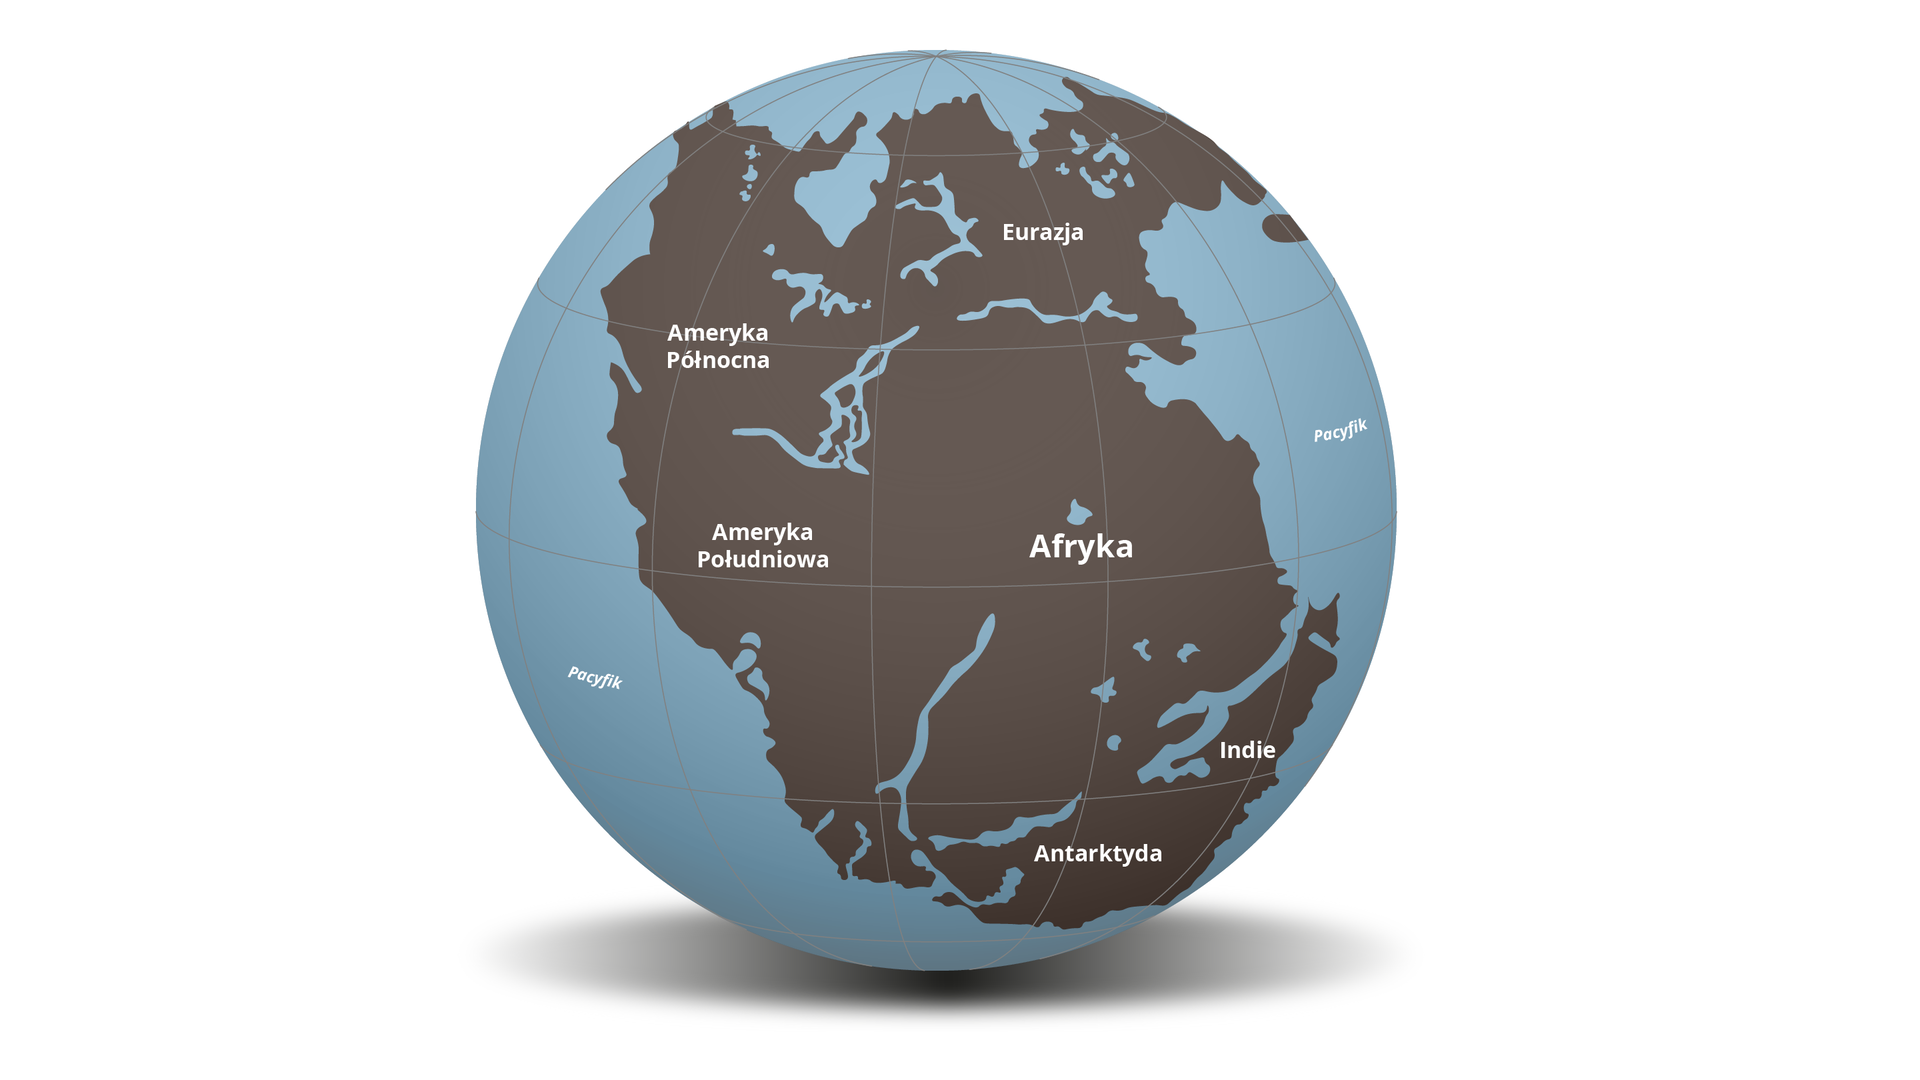  Zdjęcie przedstawia pradawny kontynent Pangea znajdujący się na kuli ziemskiej. Jest to jeden duży kontynent składający się ze zlepków dzisiejszych lądów. Pomiędzy nimi gdzieniegdzie znajdują się cienkie cieśniny lub jeziora. W centralnej części kontynentu jest Afryka, powyżej niej znajduje się Euroazja, łączy się ona również z Ameryką Północną. Pod Ameryką Północną jest Ameryka Południowa. Poniżej Afryki jest dzisiejsza Antarktyda. Ma ona połączenie lądowe z Indiami. Od Afryki oddziela Indie cienka cieśnina.